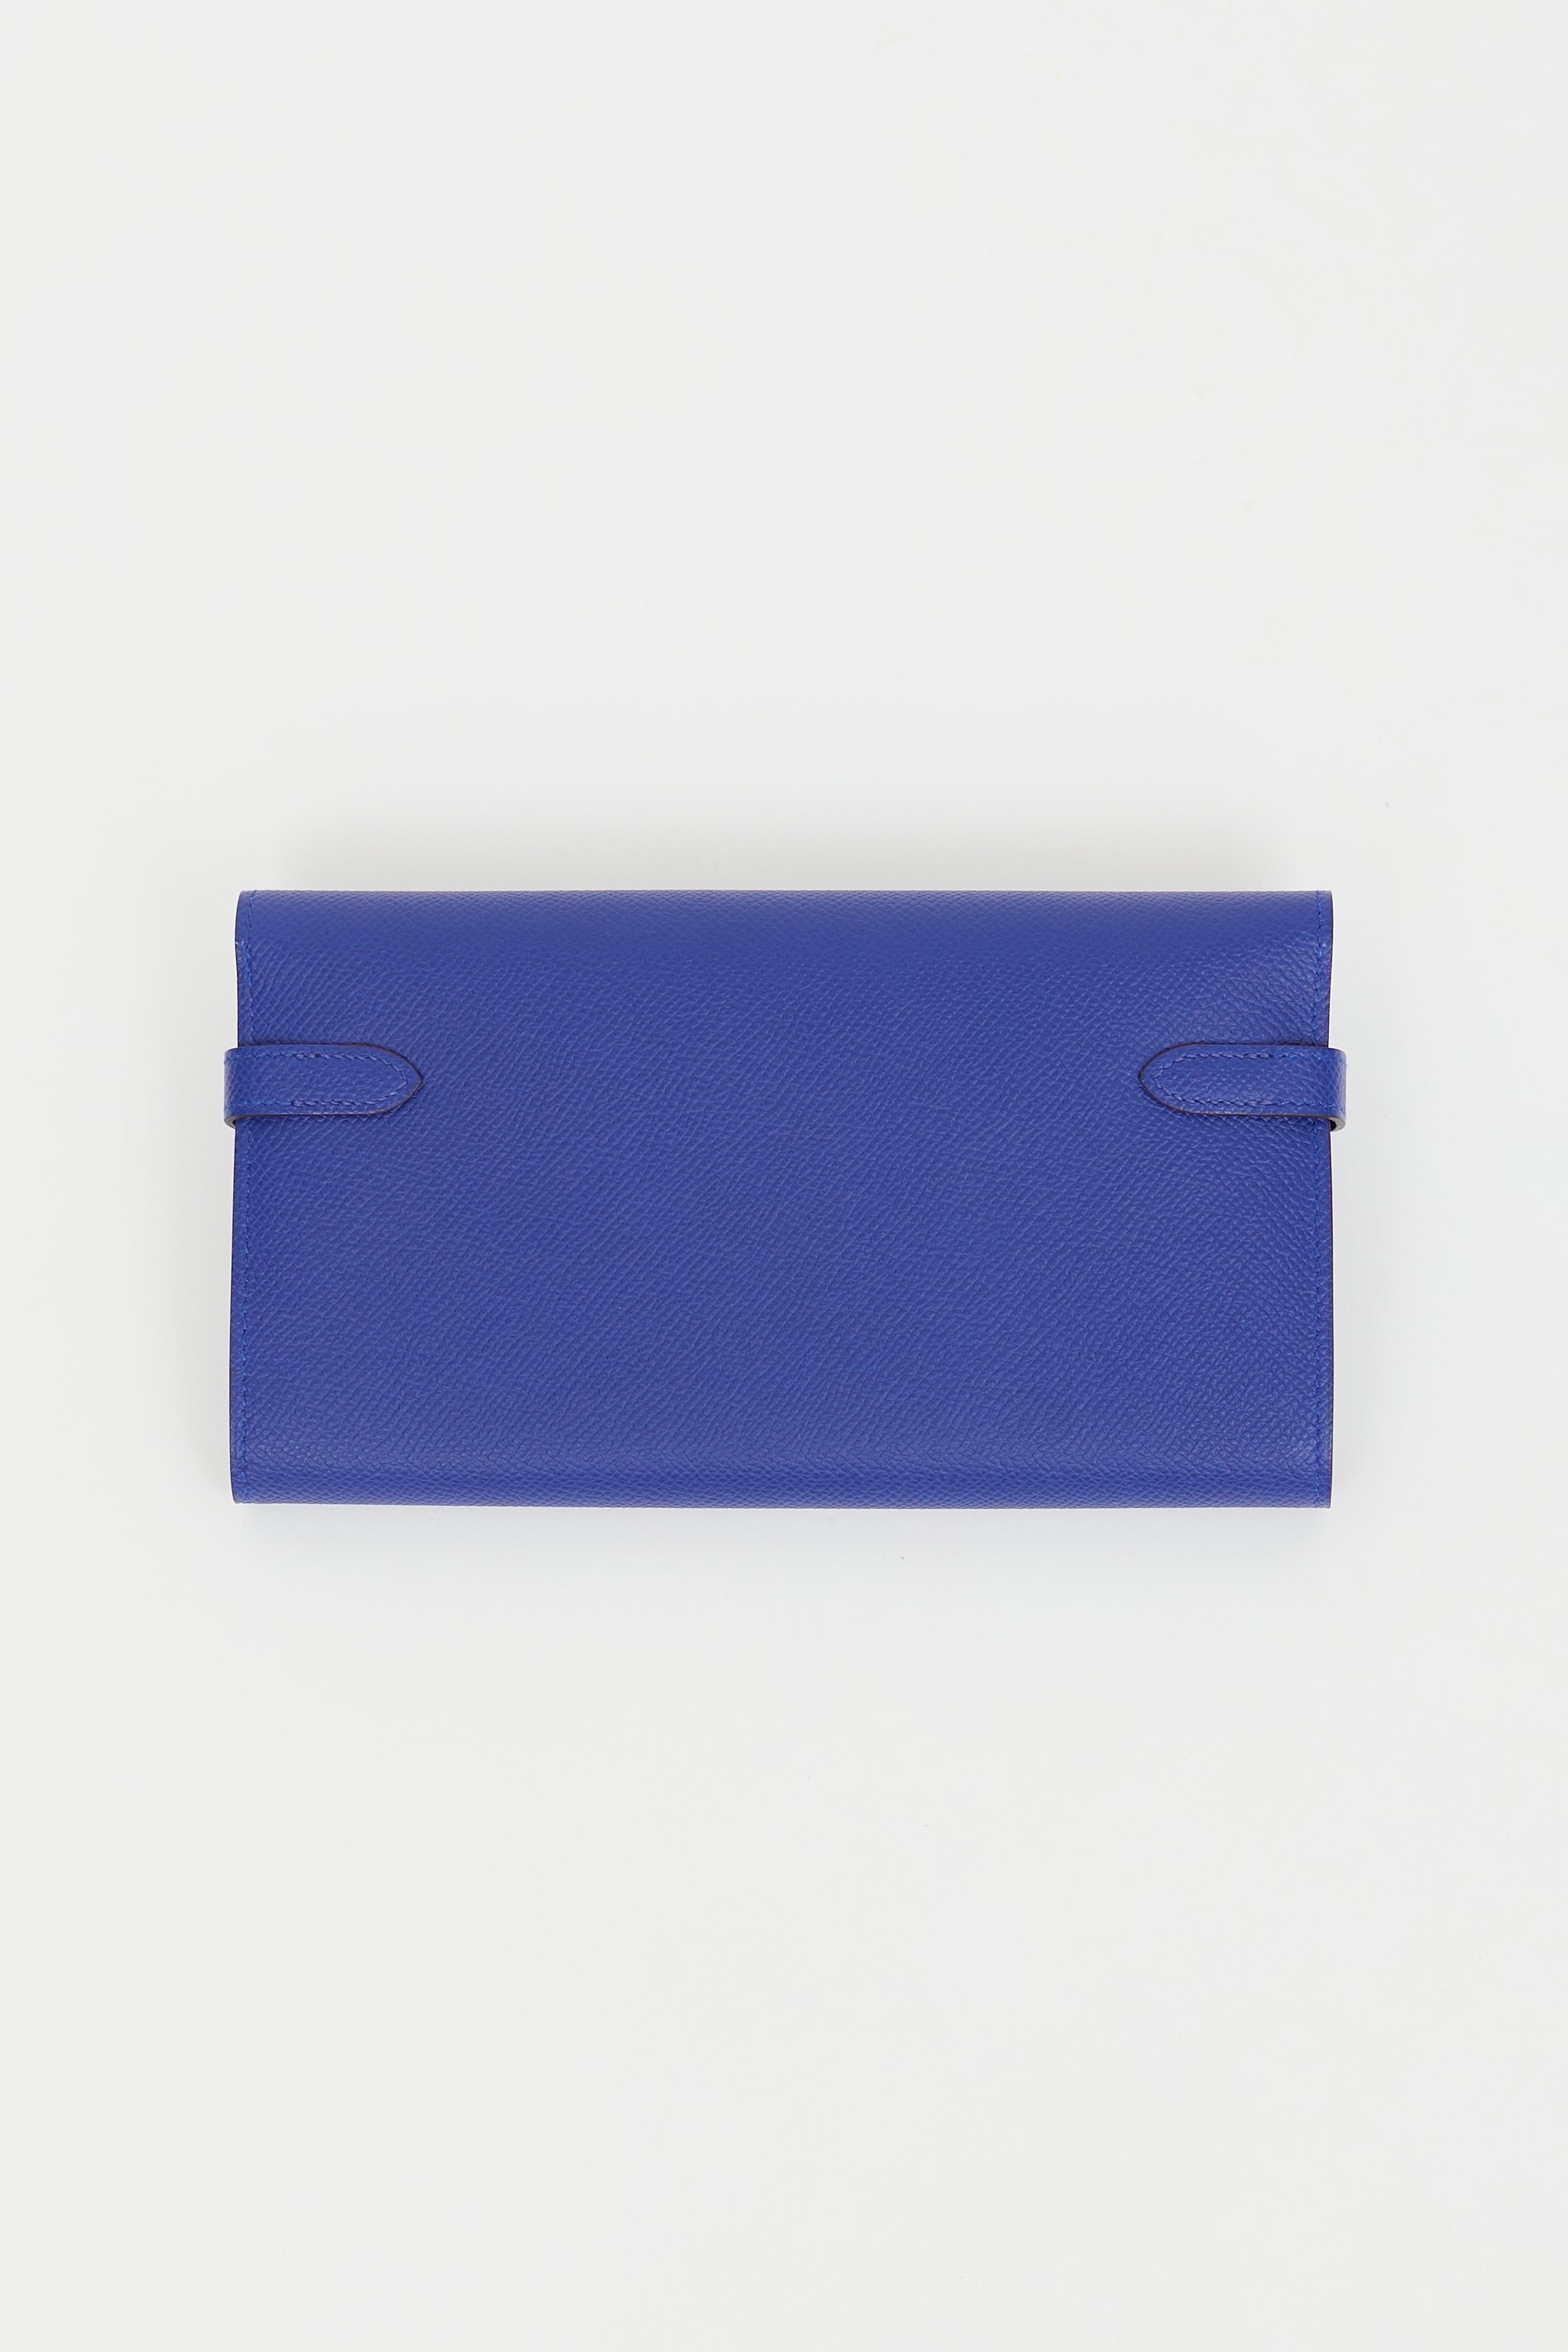 Hermès // 2016 Bleu Electrique Togo Kelly Long Wallet – VSP Consignment